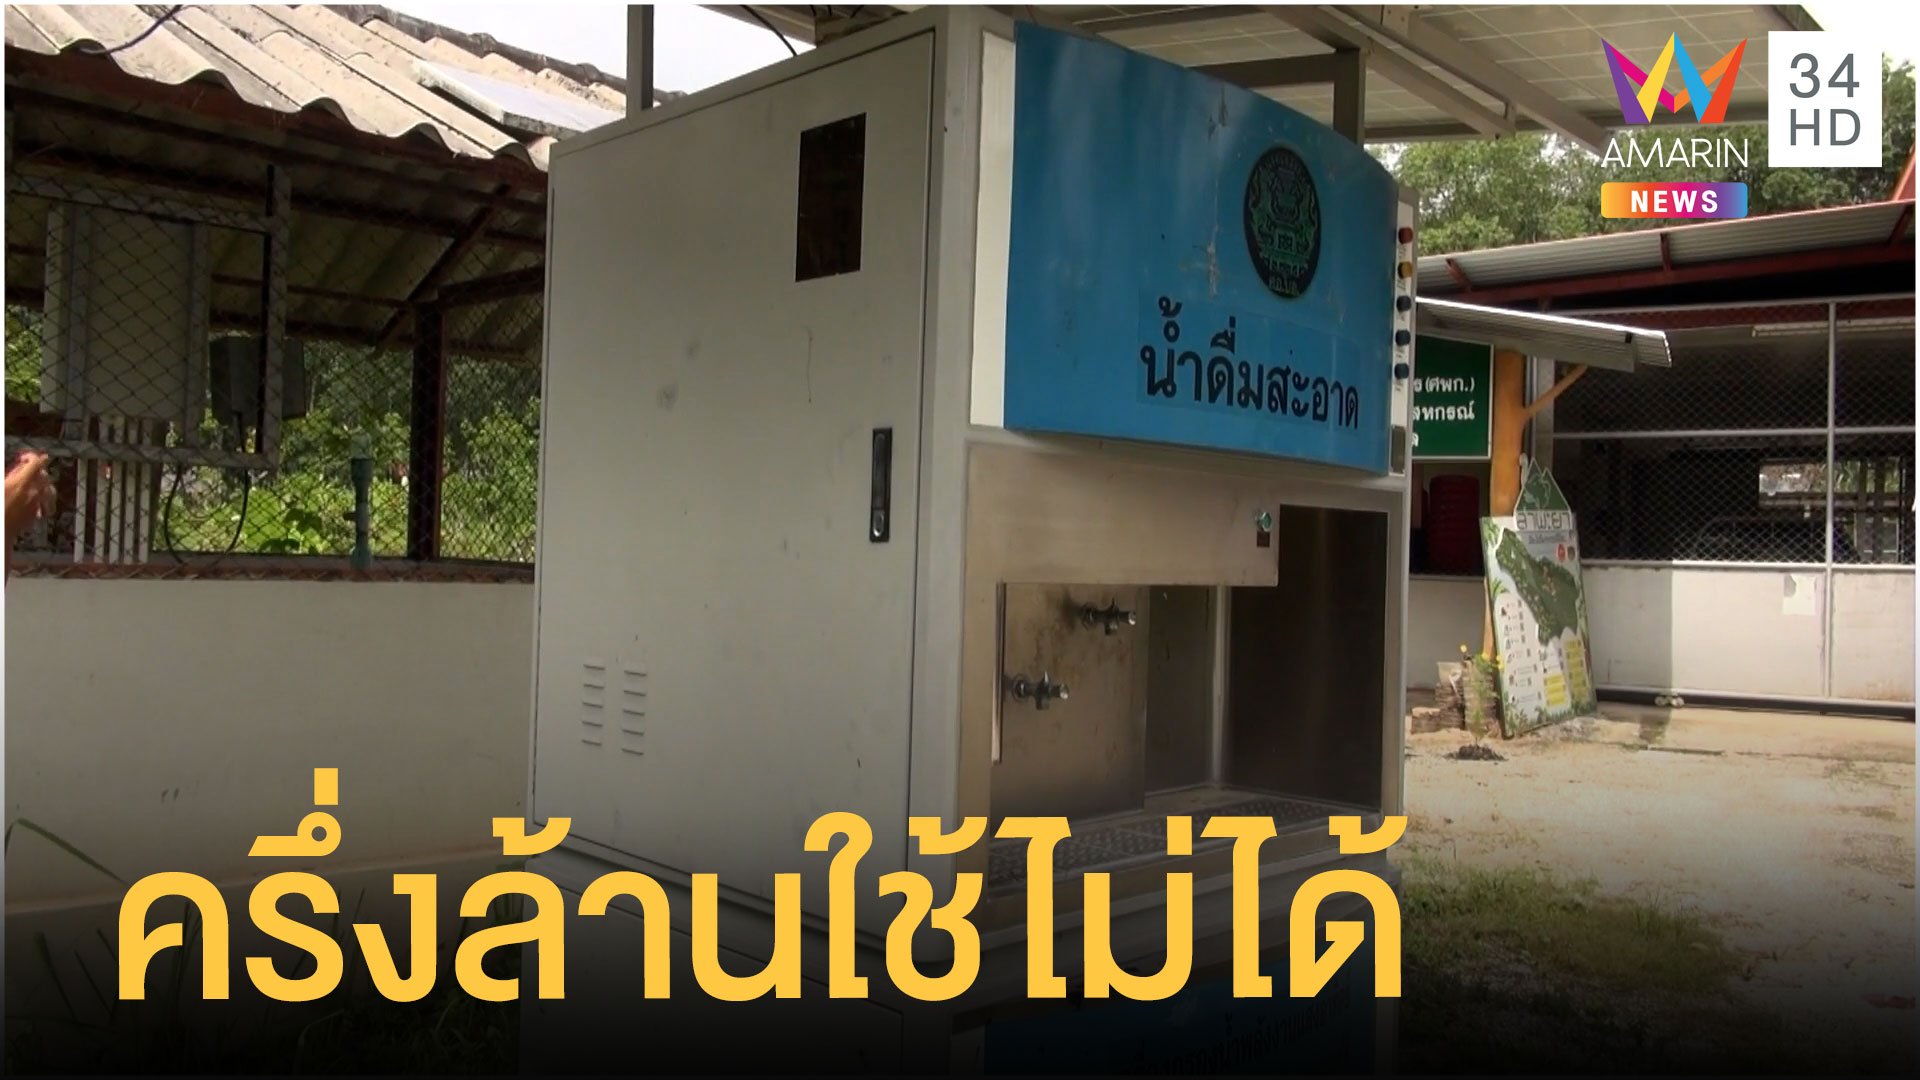 ตู้กรองน้ำราคาครึ่งล้านใช้งานไม่ได้ ชาวบ้านโวยไร้ค่า | ข่าวอรุณอมรินทร์ | 17 ก.ย. 64 | AMARIN TVHD34